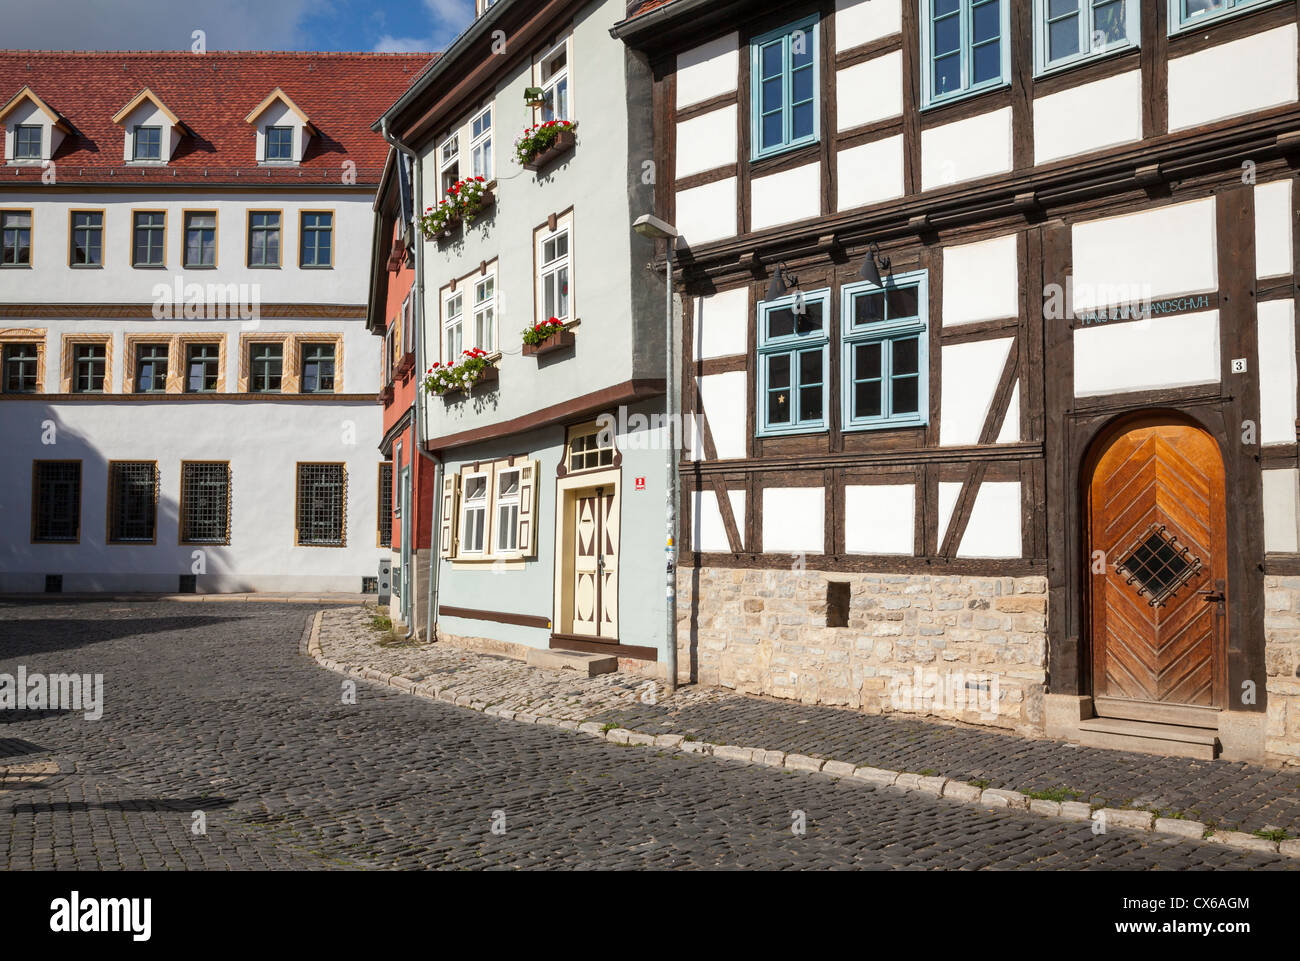 Altstadt, Erfurt, Thuringe, Allemagne Banque D'Images